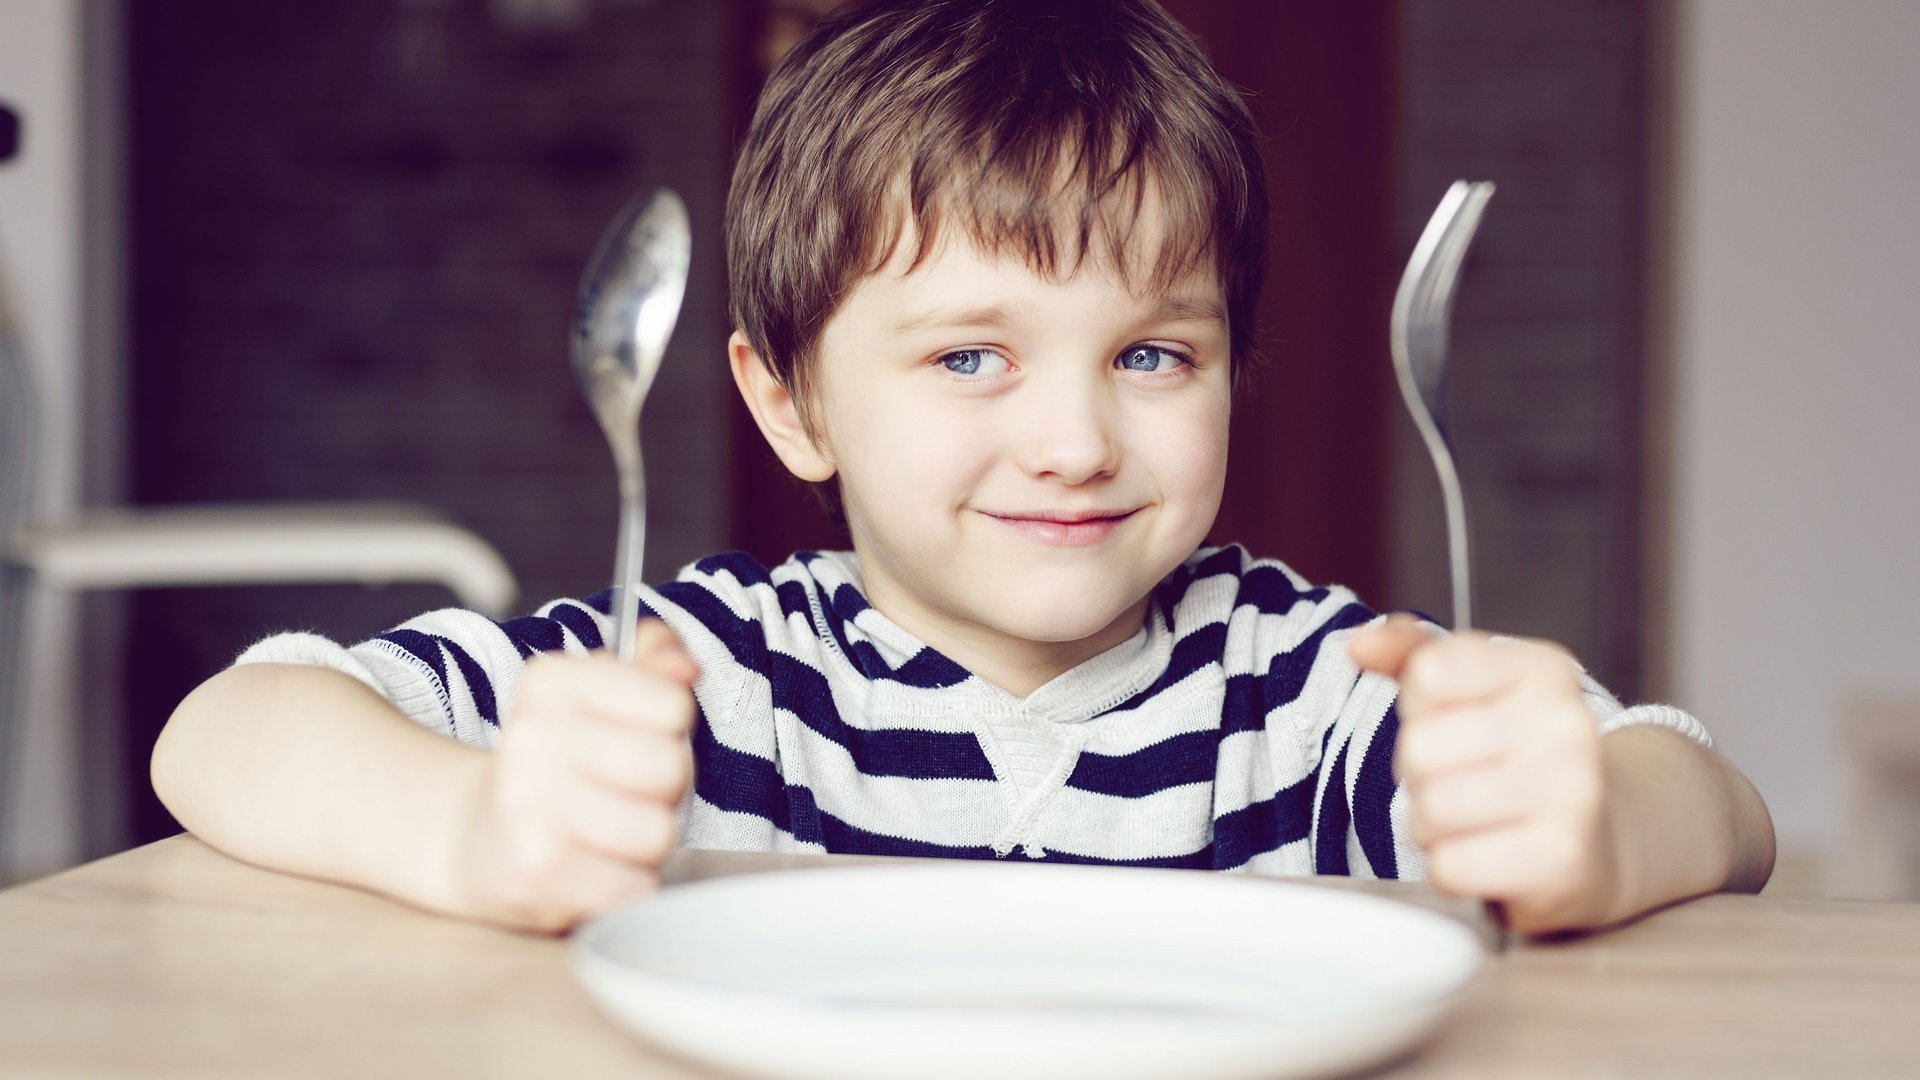 Tischsprüche: Lustige Sprüche zum Essen mit Kindern